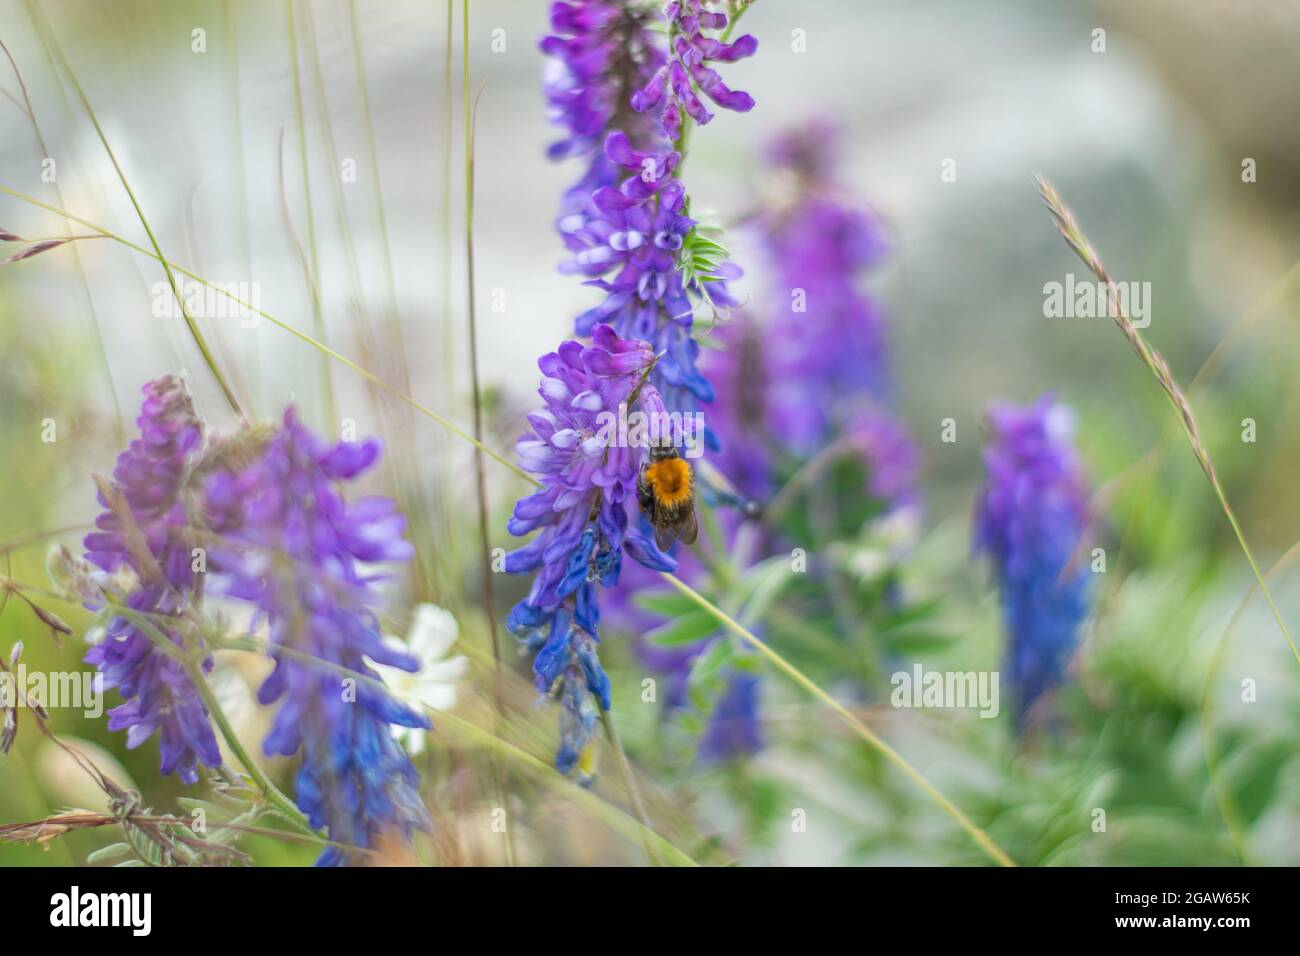 Isoliertes Exemplar der Honigbiene beim Saugen von Nektar aus Lavendelblüten auf natürlichem Hintergrund mit geringer Schärfentiefe. Stockfoto